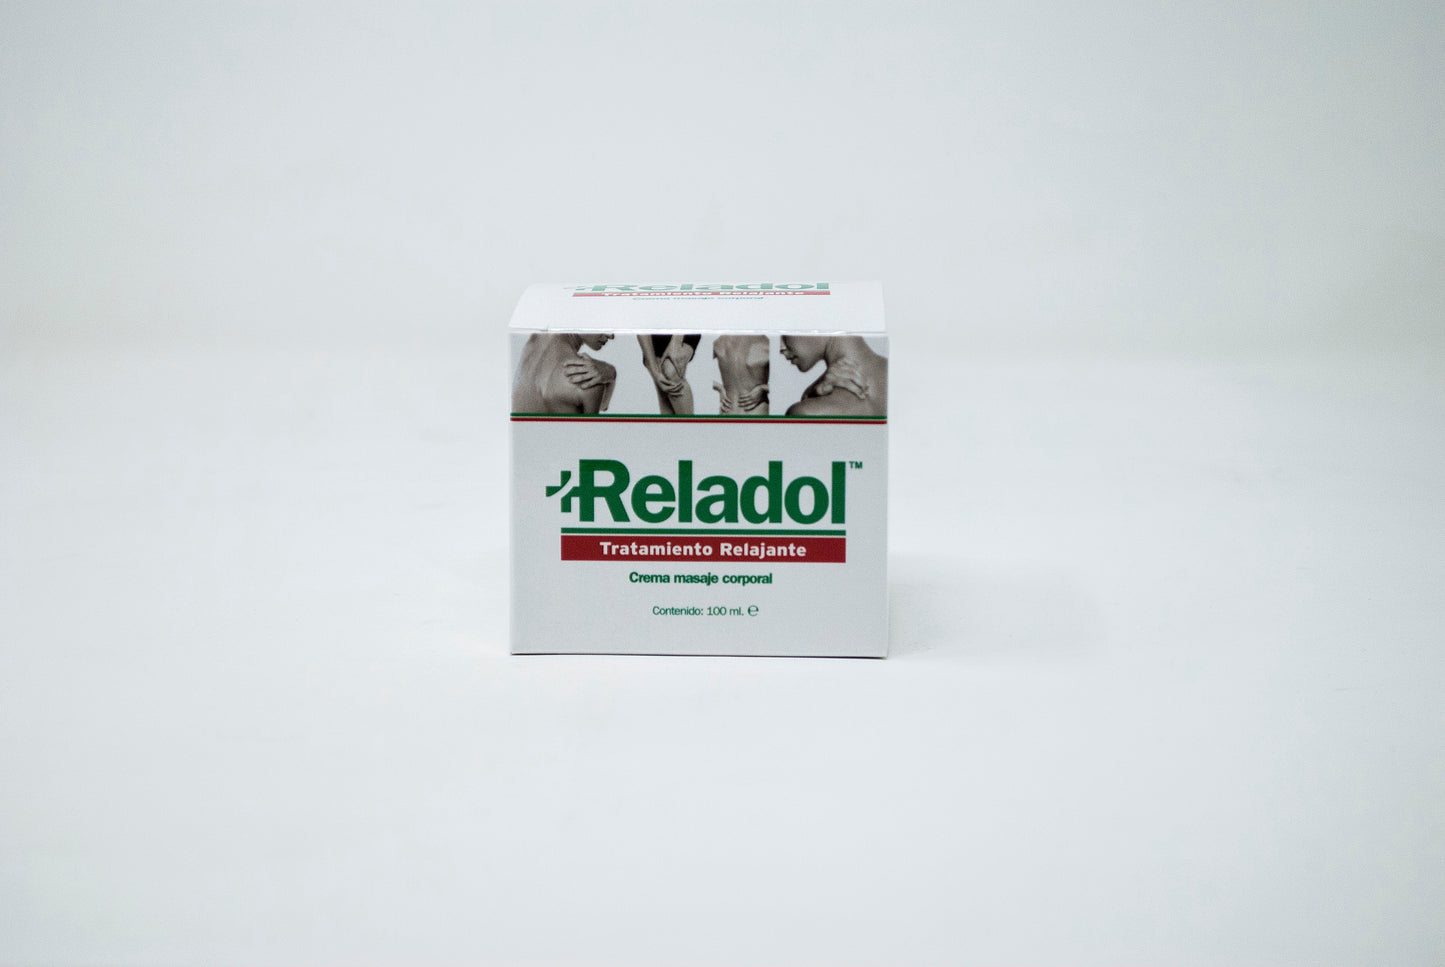 RELADOL, tělový masážní krém s mentolovým aroma pro zmírnění bolesti kloubů, 100 ml